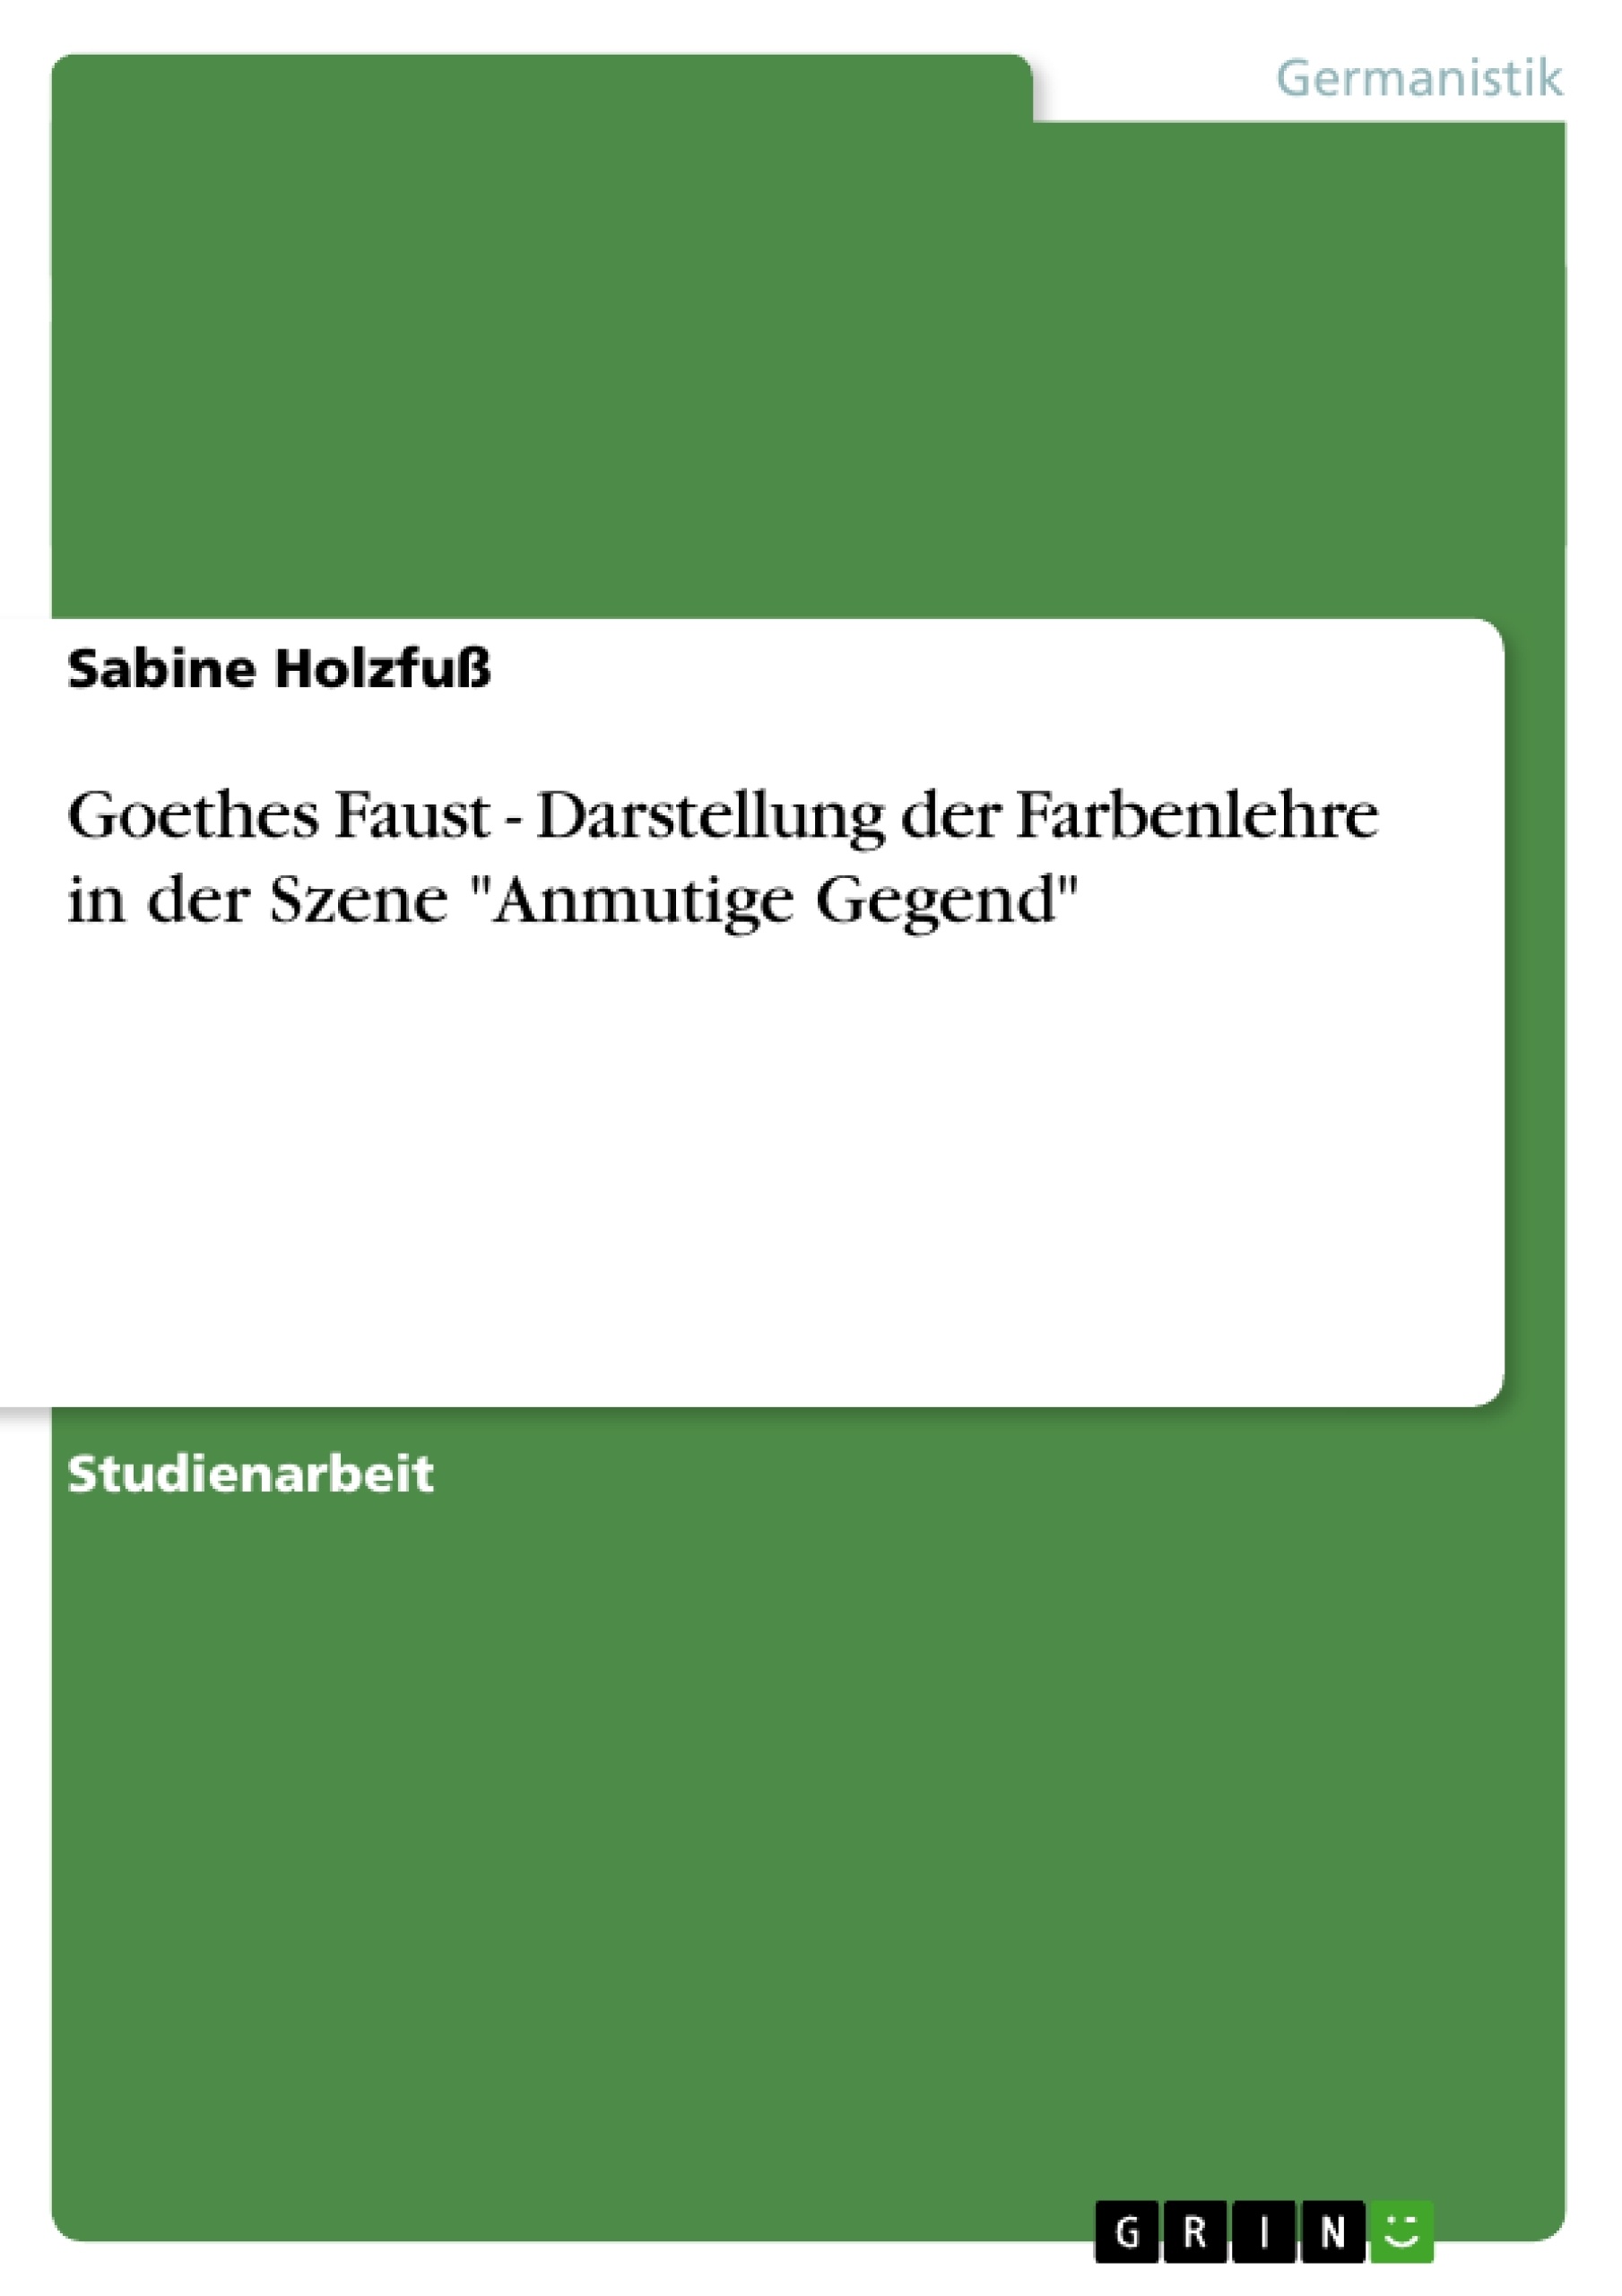 Title: Goethes Faust - Darstellung der Farbenlehre in der Szene "Anmutige Gegend"